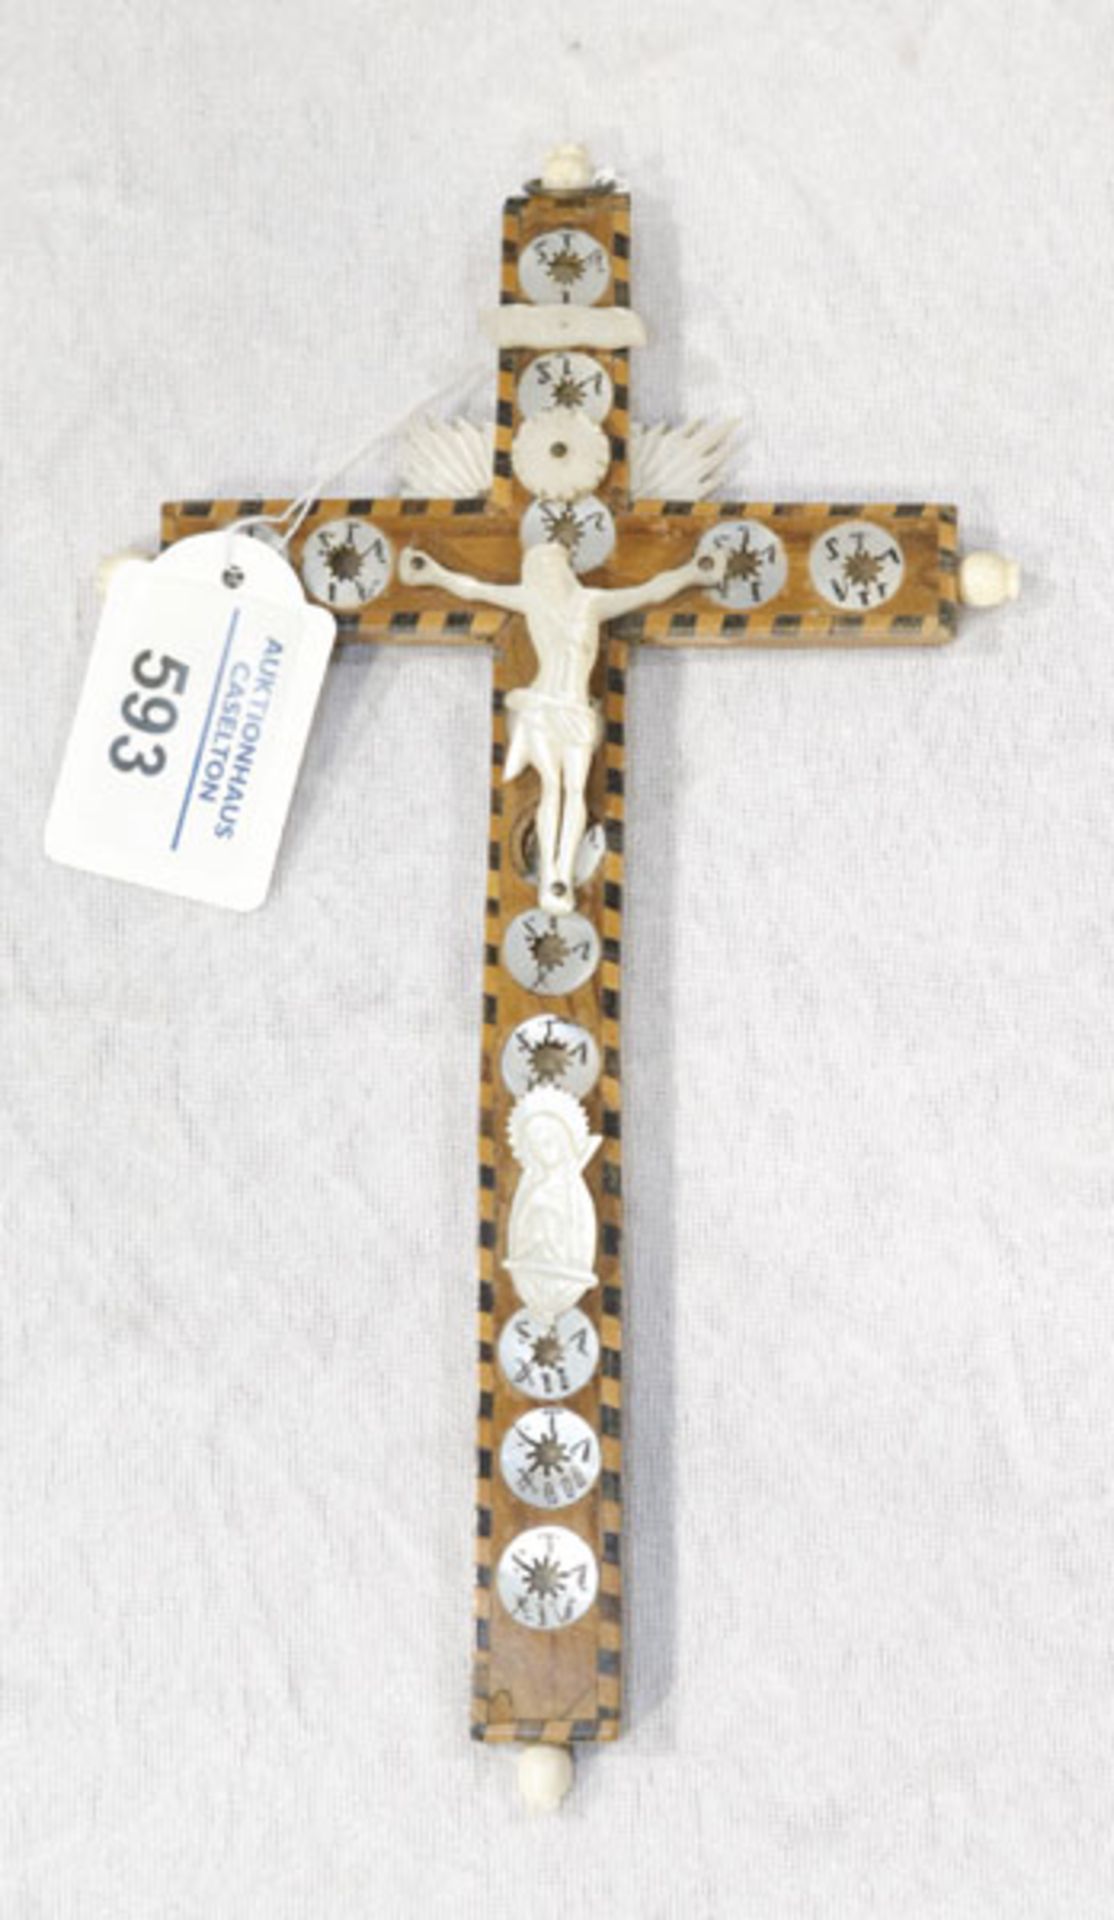 Holzkreuz mit Perlmutt Korpus Christi, Maria und Verzierung, Kreuzrand intarsiert, nicht komplett,